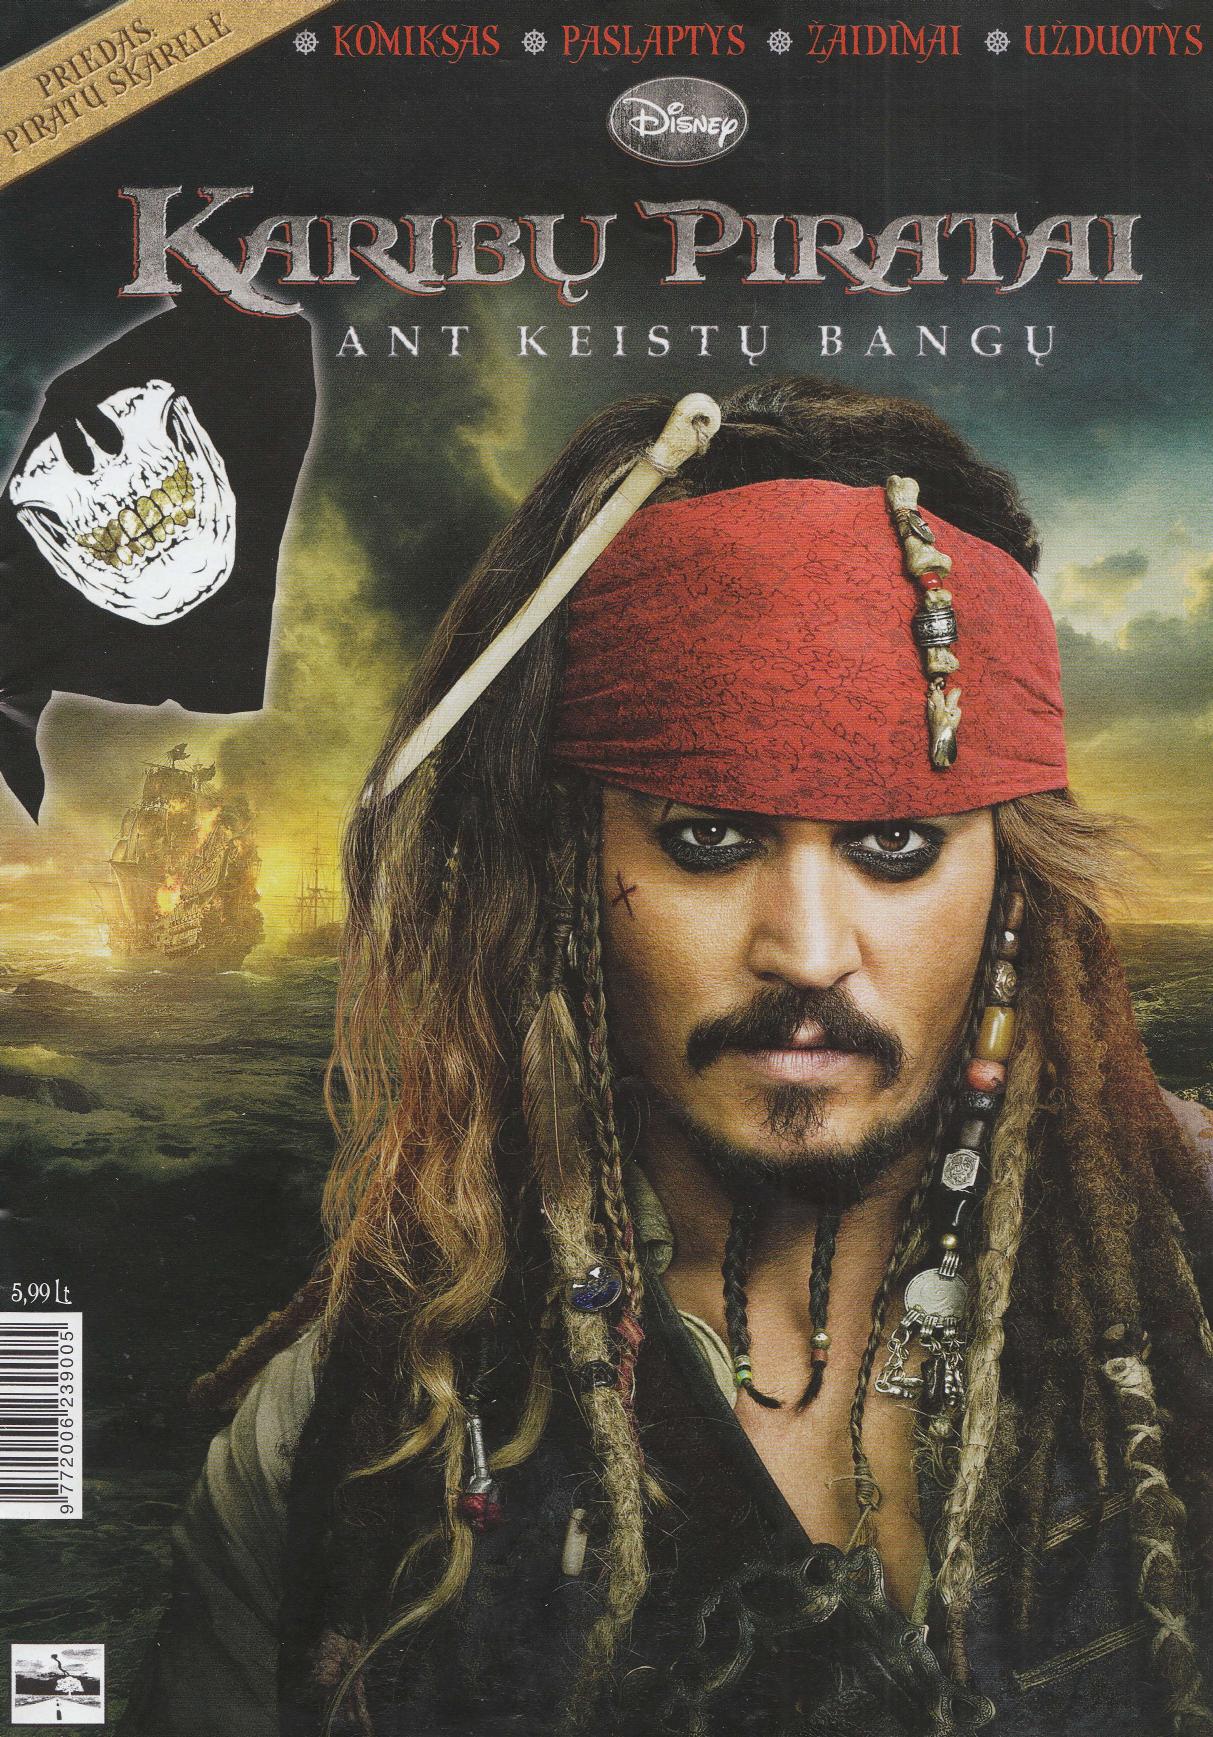 Karibų piratai:ant keistų bangų 1 dalis (2011 LT)